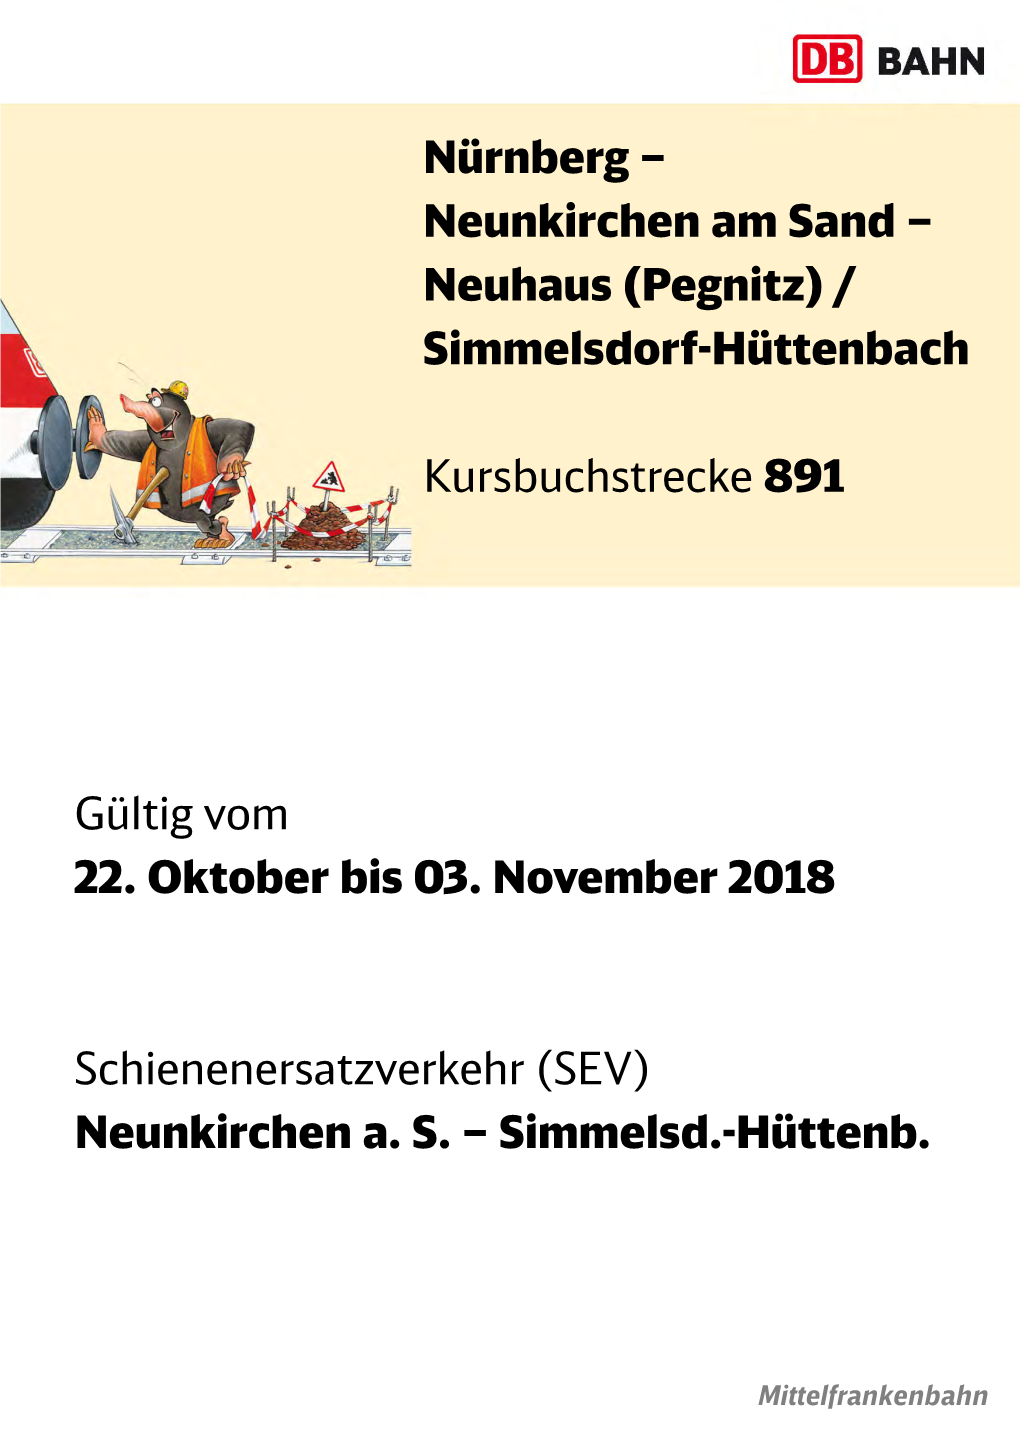 Fahrplan Nürnberg Hbf - Neuhaus/Simmelsdorf-Hüttenbach Gültig Vom 22